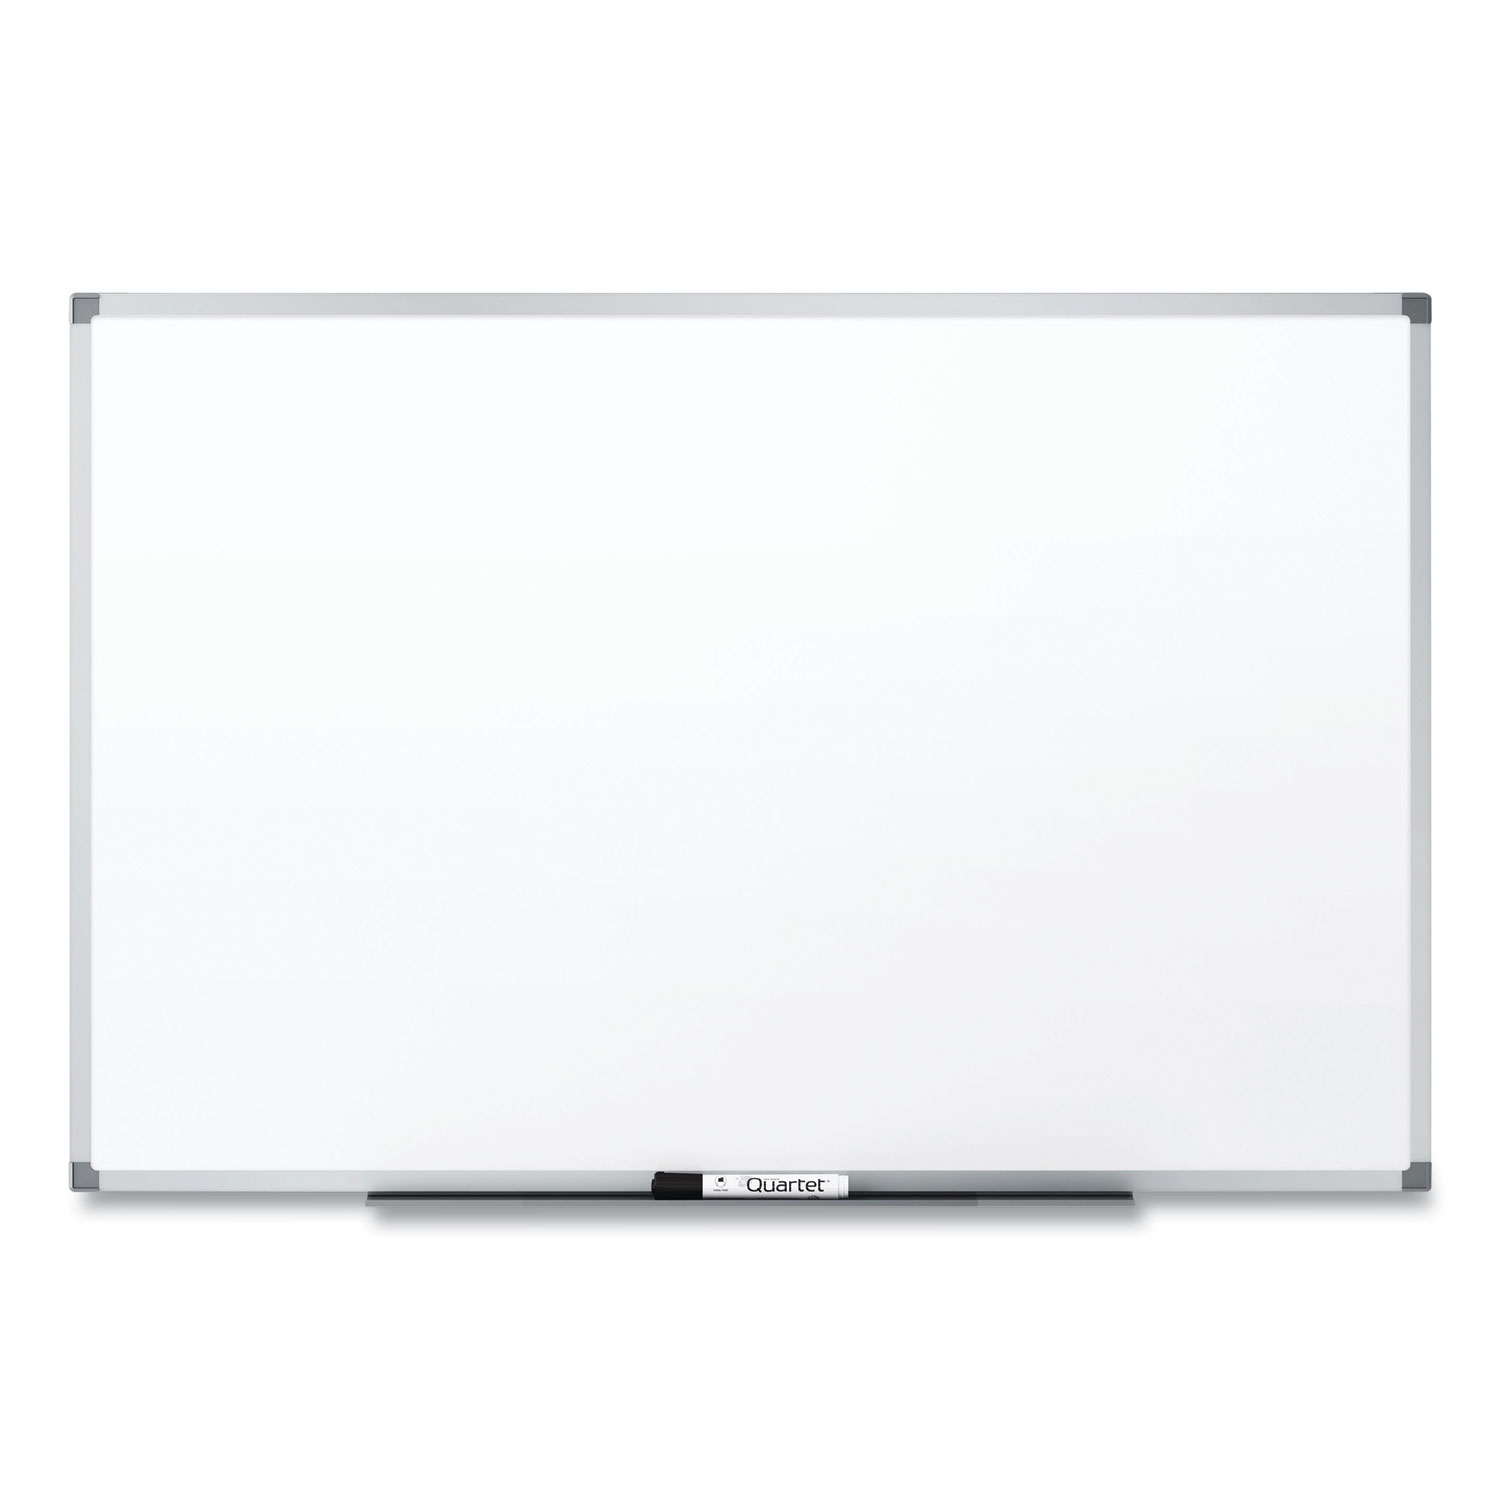  3M DEP7248A Porcelain Dry Erase Board, 72 x 48, Widescreen Aluminum Frame (MMM342640) 